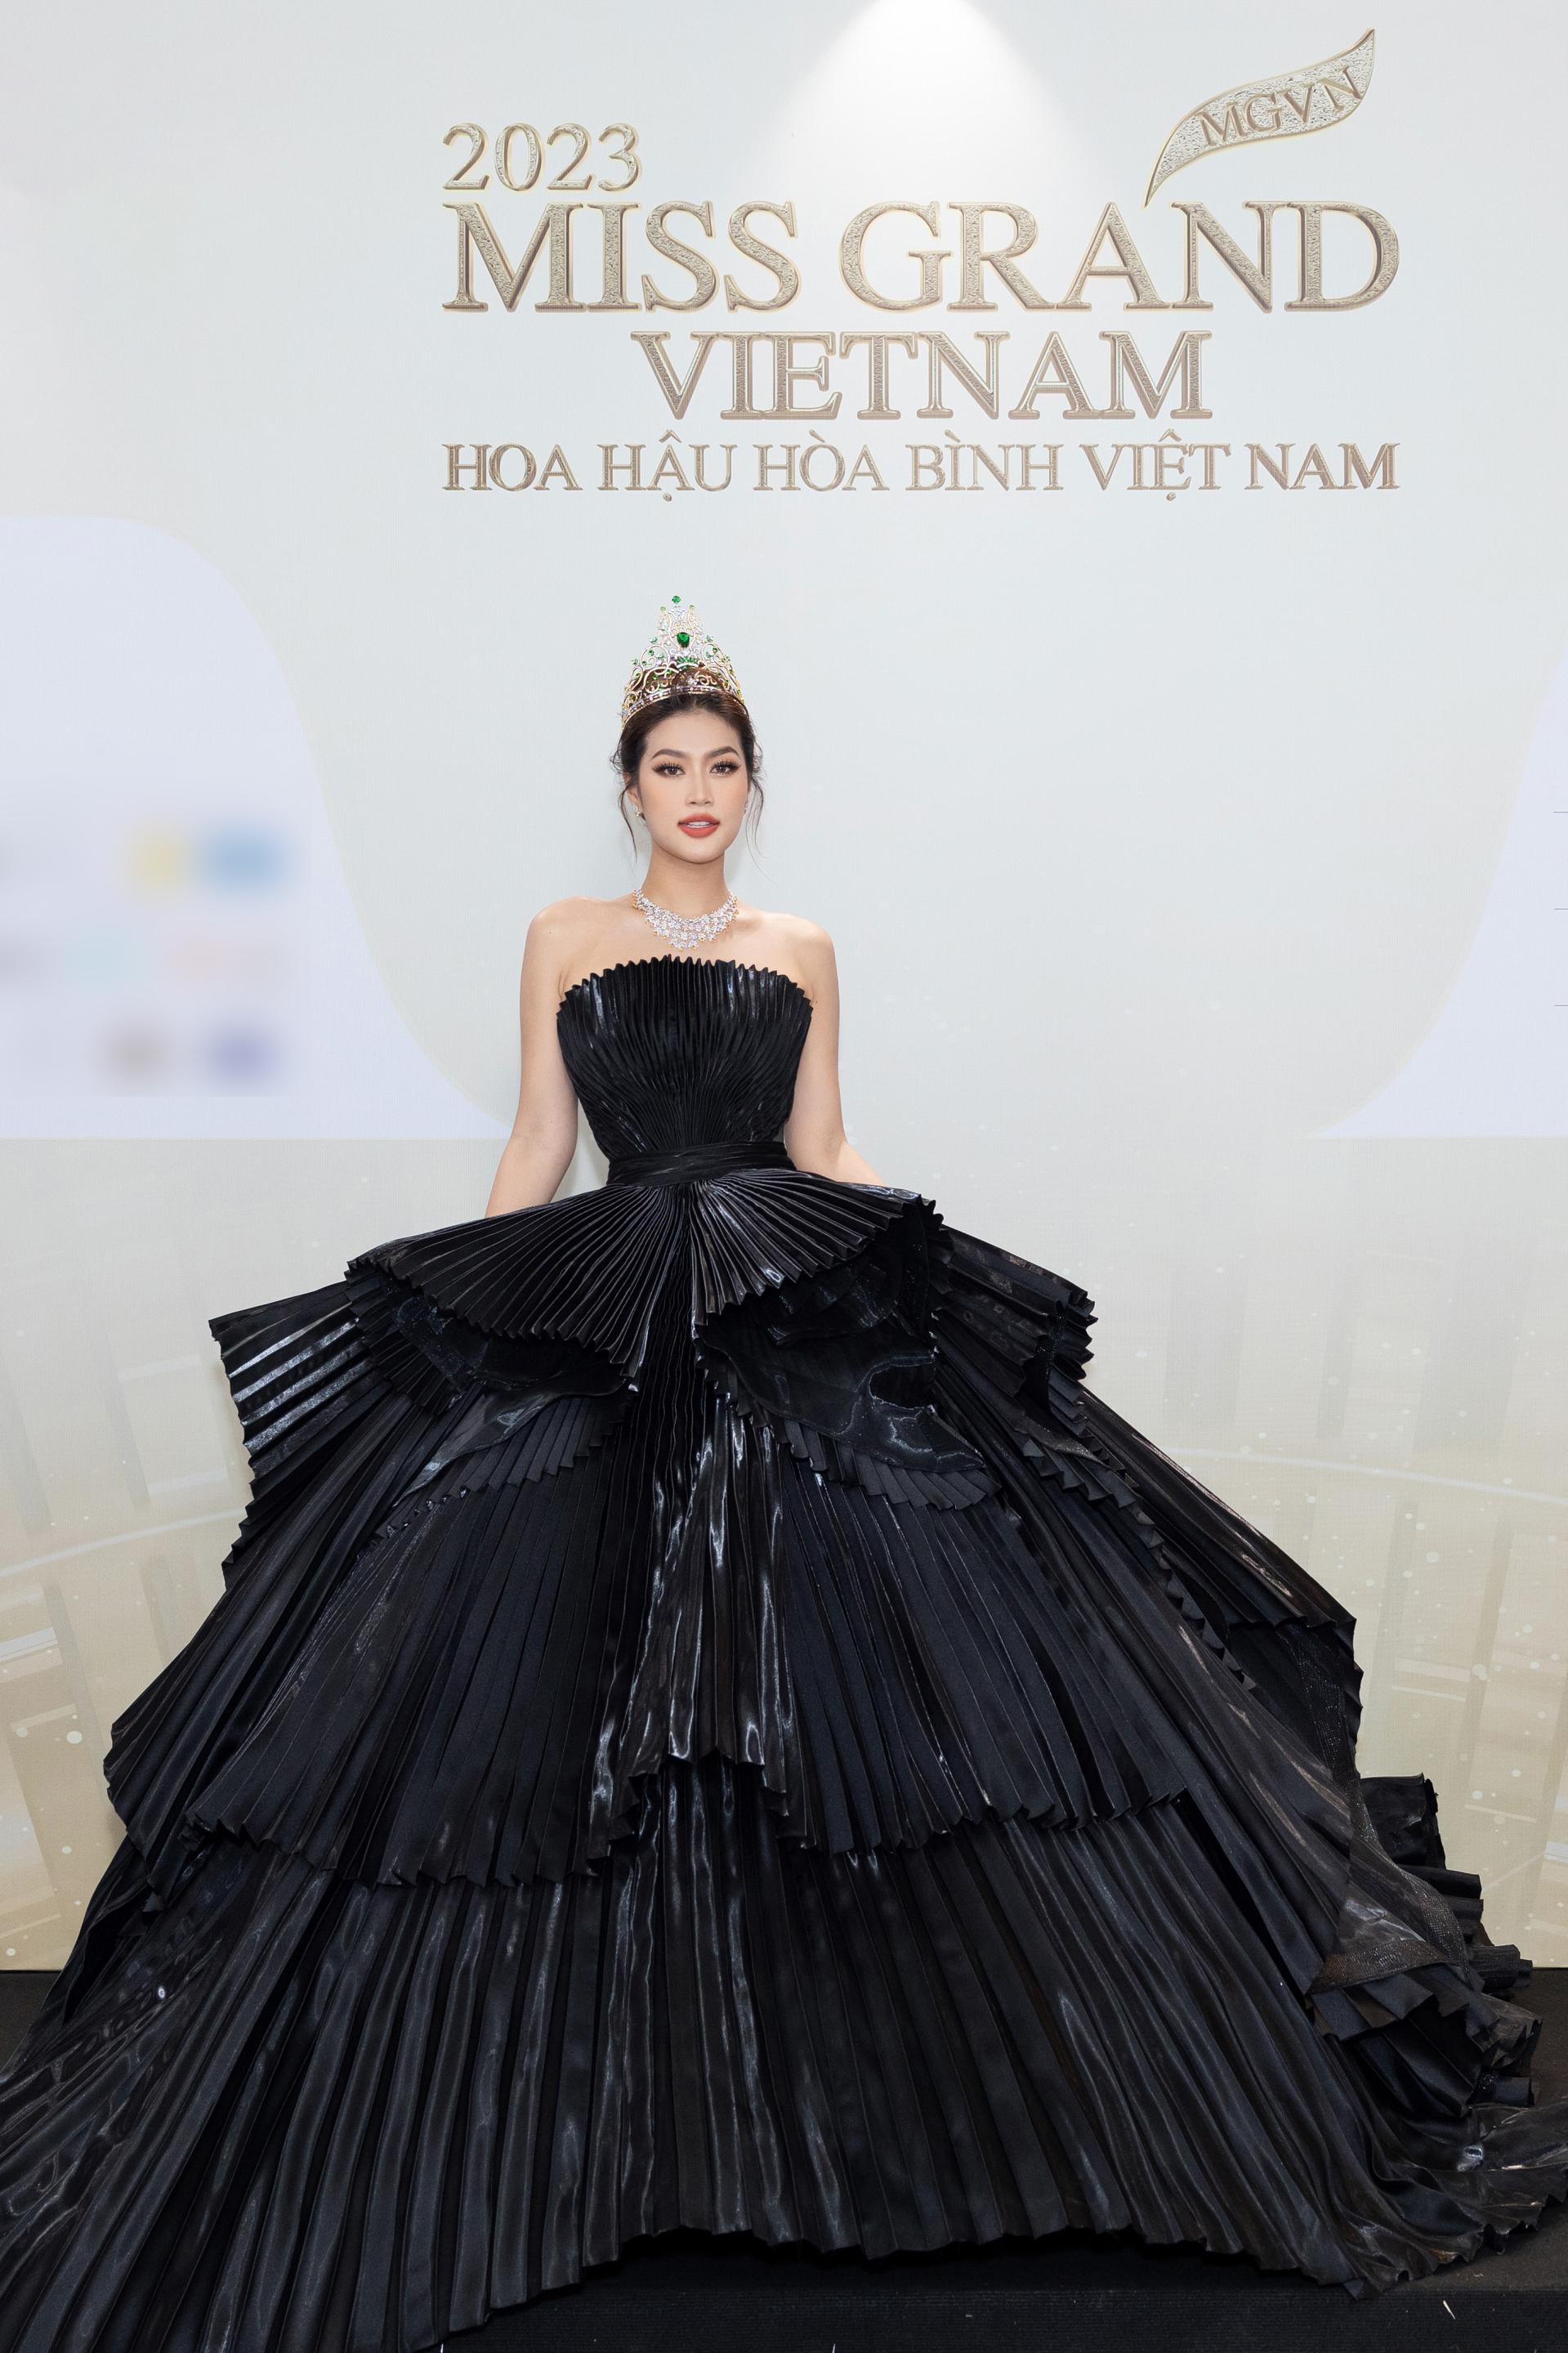 Thảm đỏ chung kết Miss Grand Vietnam 2023: Vợ chồng Trường Giang Nhã Phương đi cùng bạn trai tin đồn của Đoàn Thiên Ân - ảnh 1